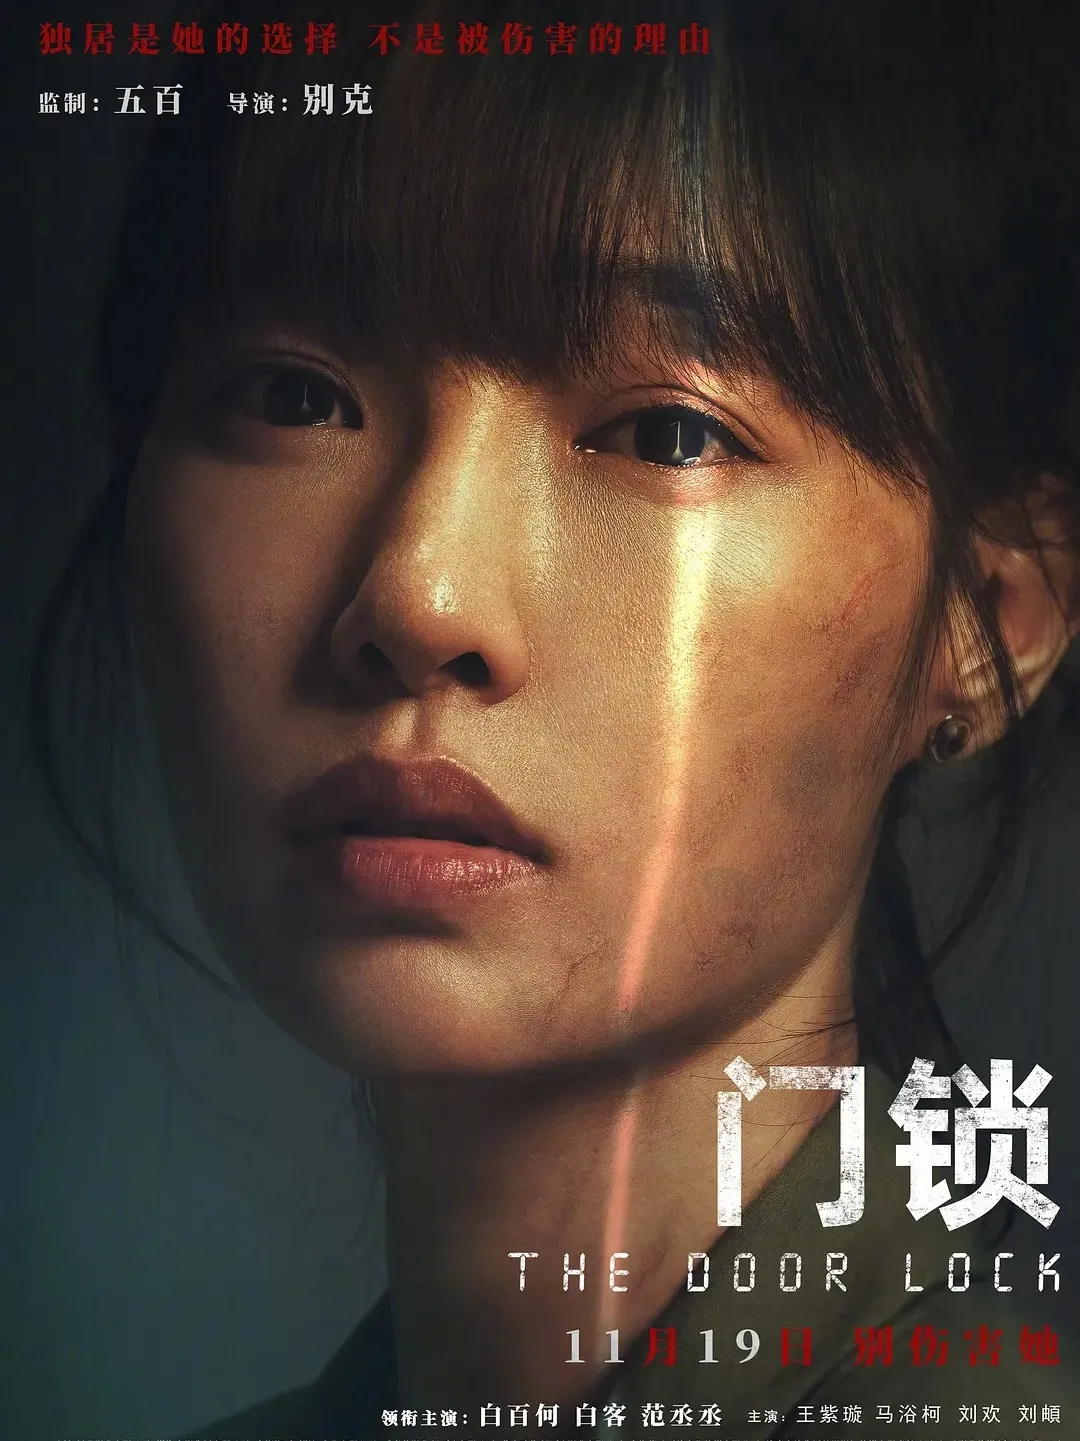 2021年11月电影上映一览表 梅艳芳天书奇谈4k纪念版上映_1-6